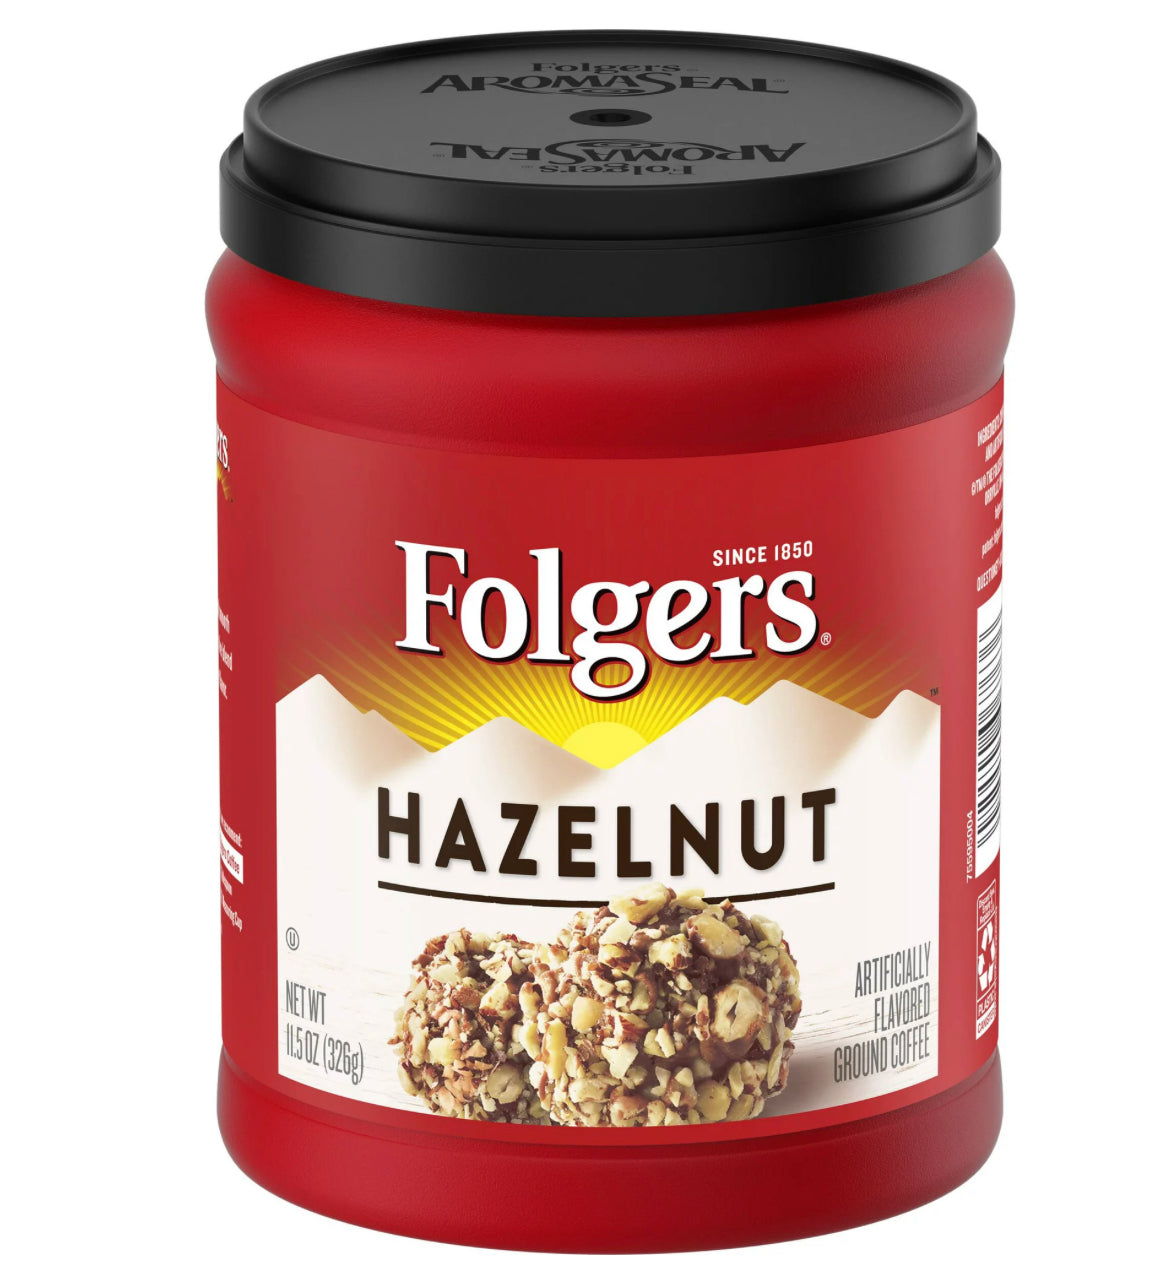 Folgers Hazelnut Ground Coffee, 11.5oz